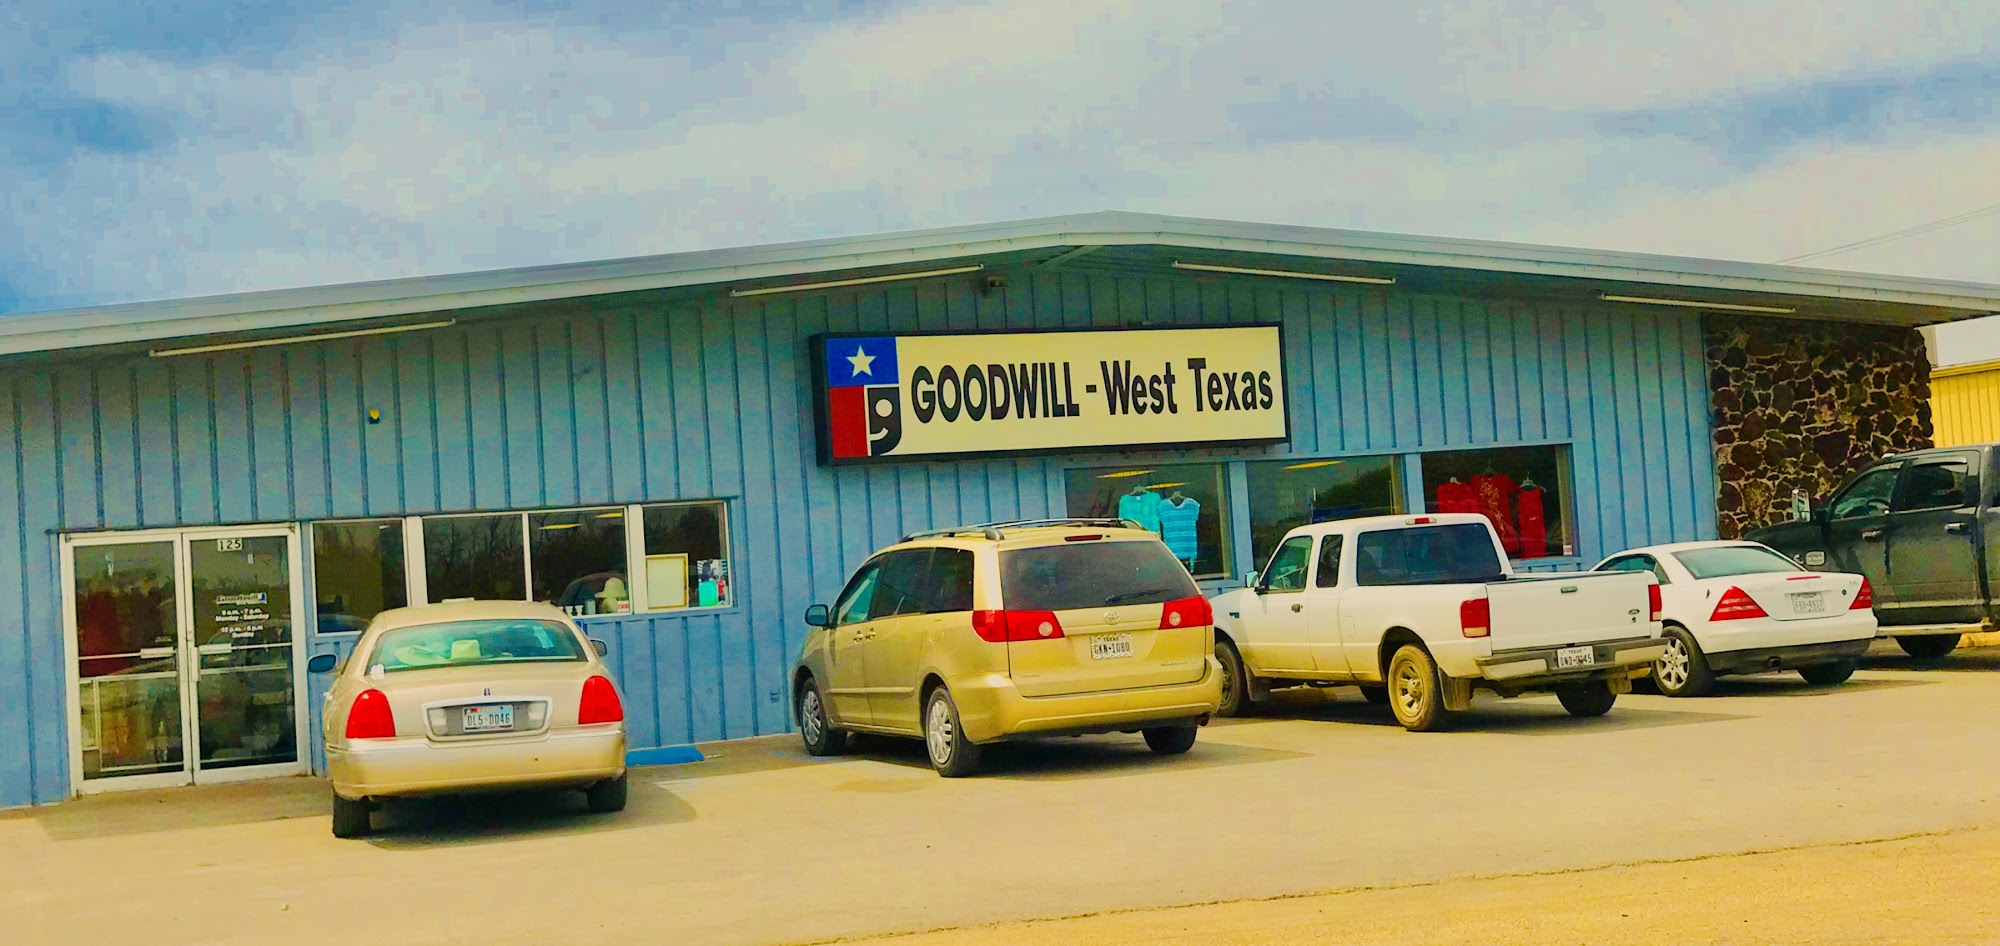 Goodwill West Texas - Clyde